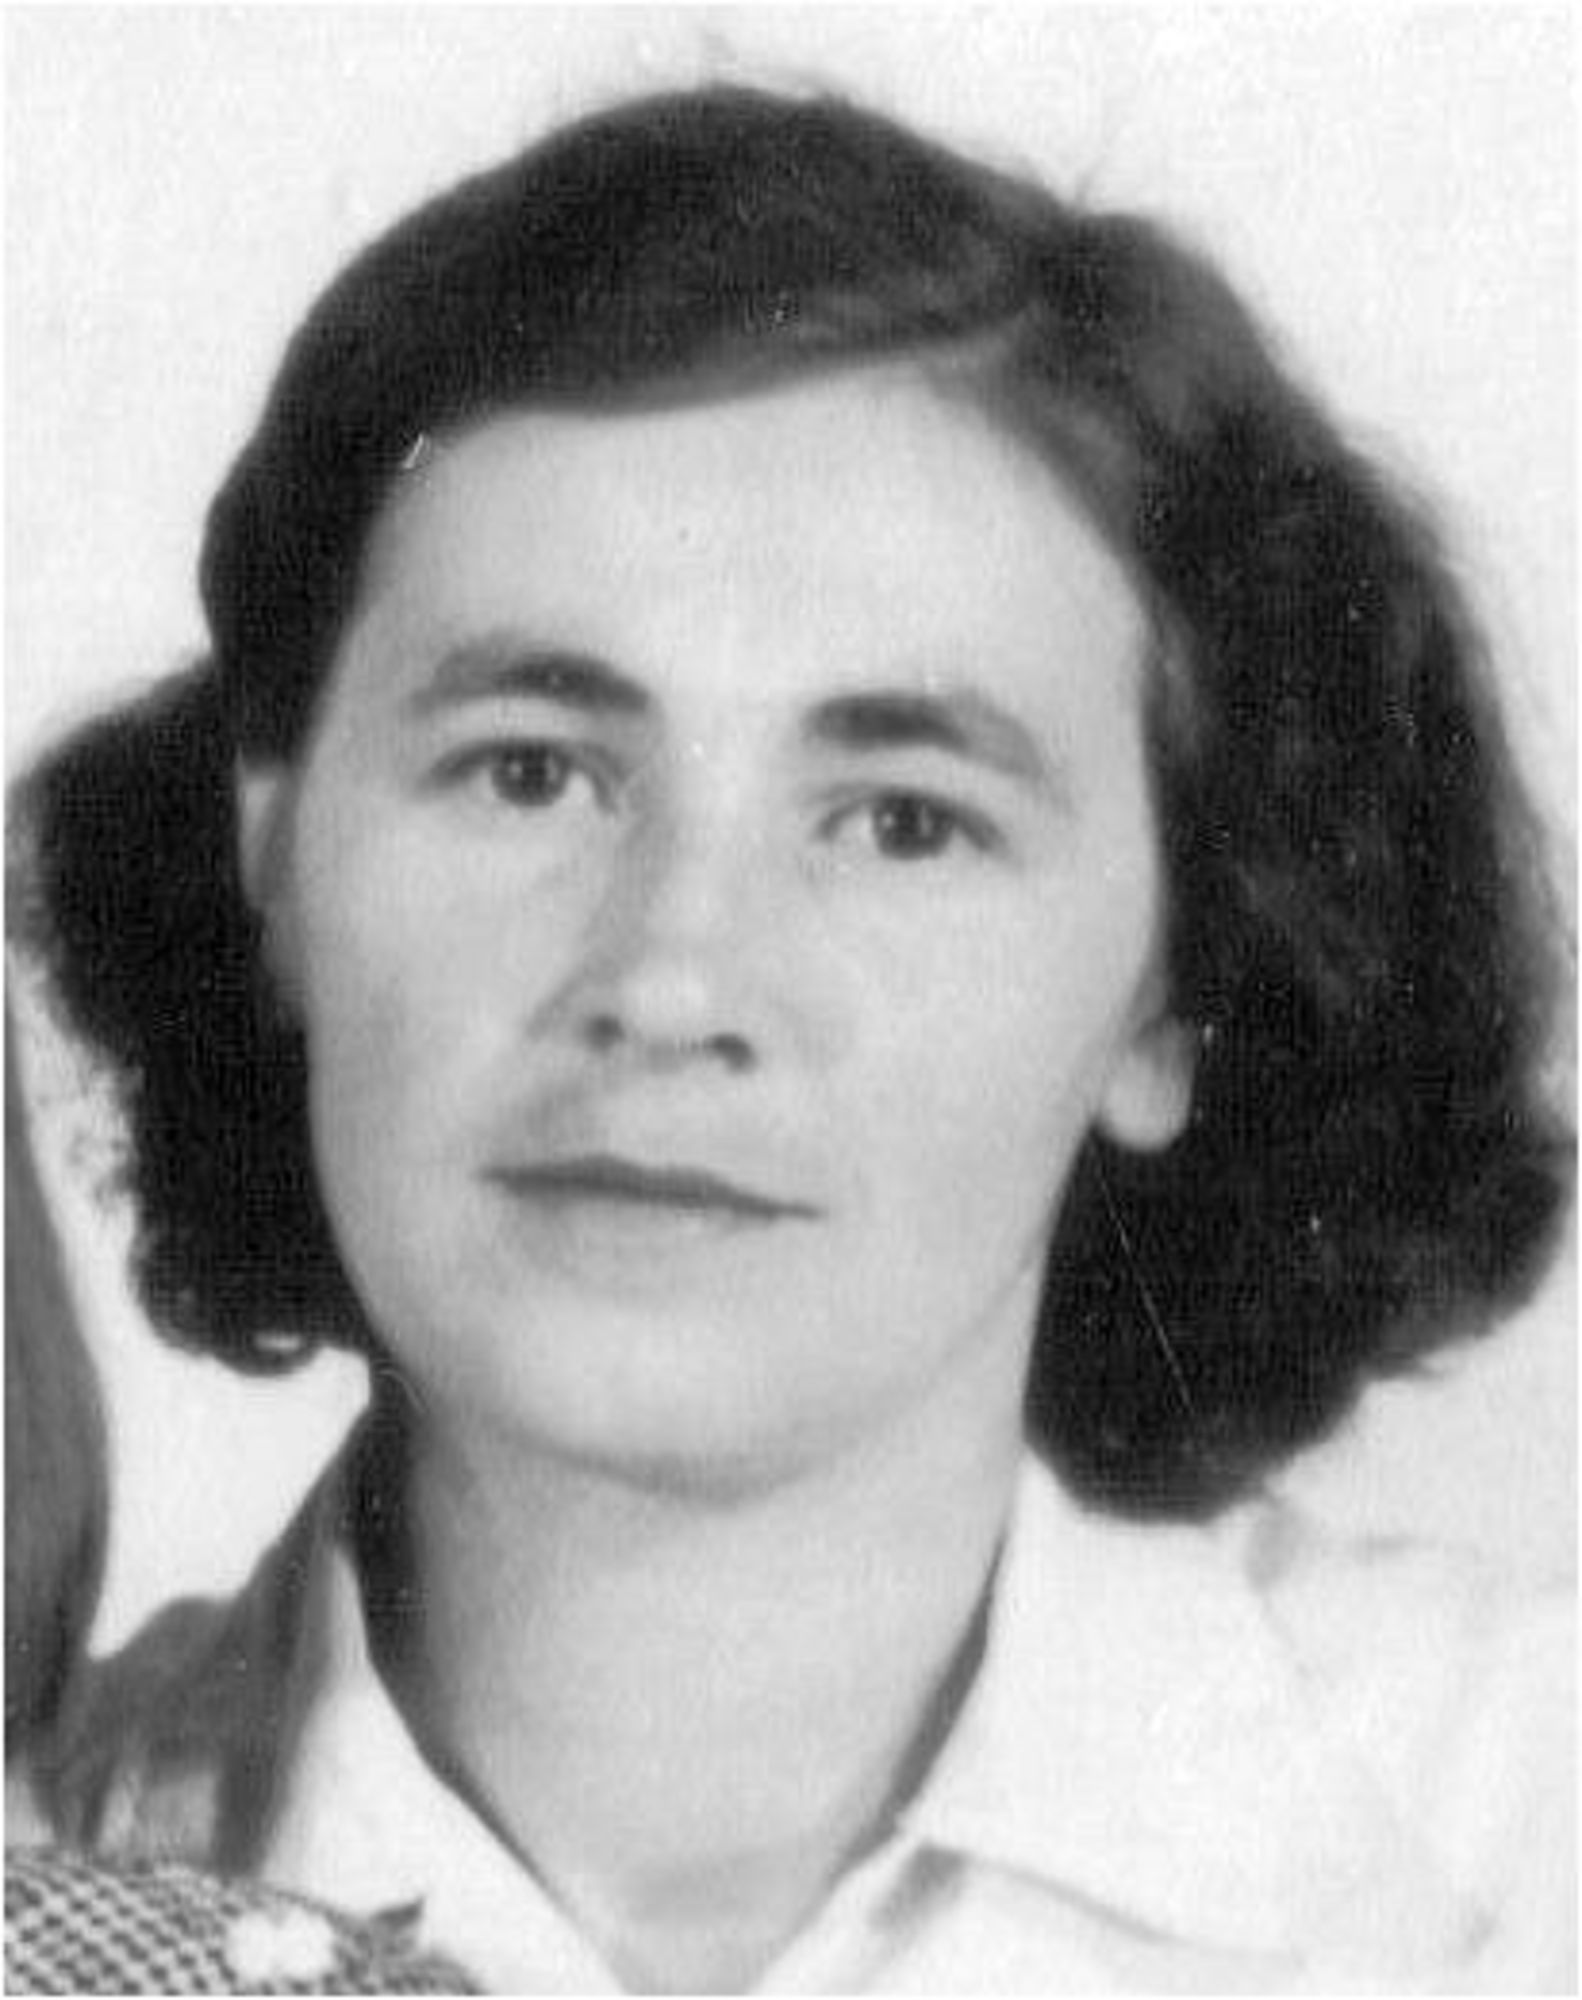 Anna Šrotýřová in 1950